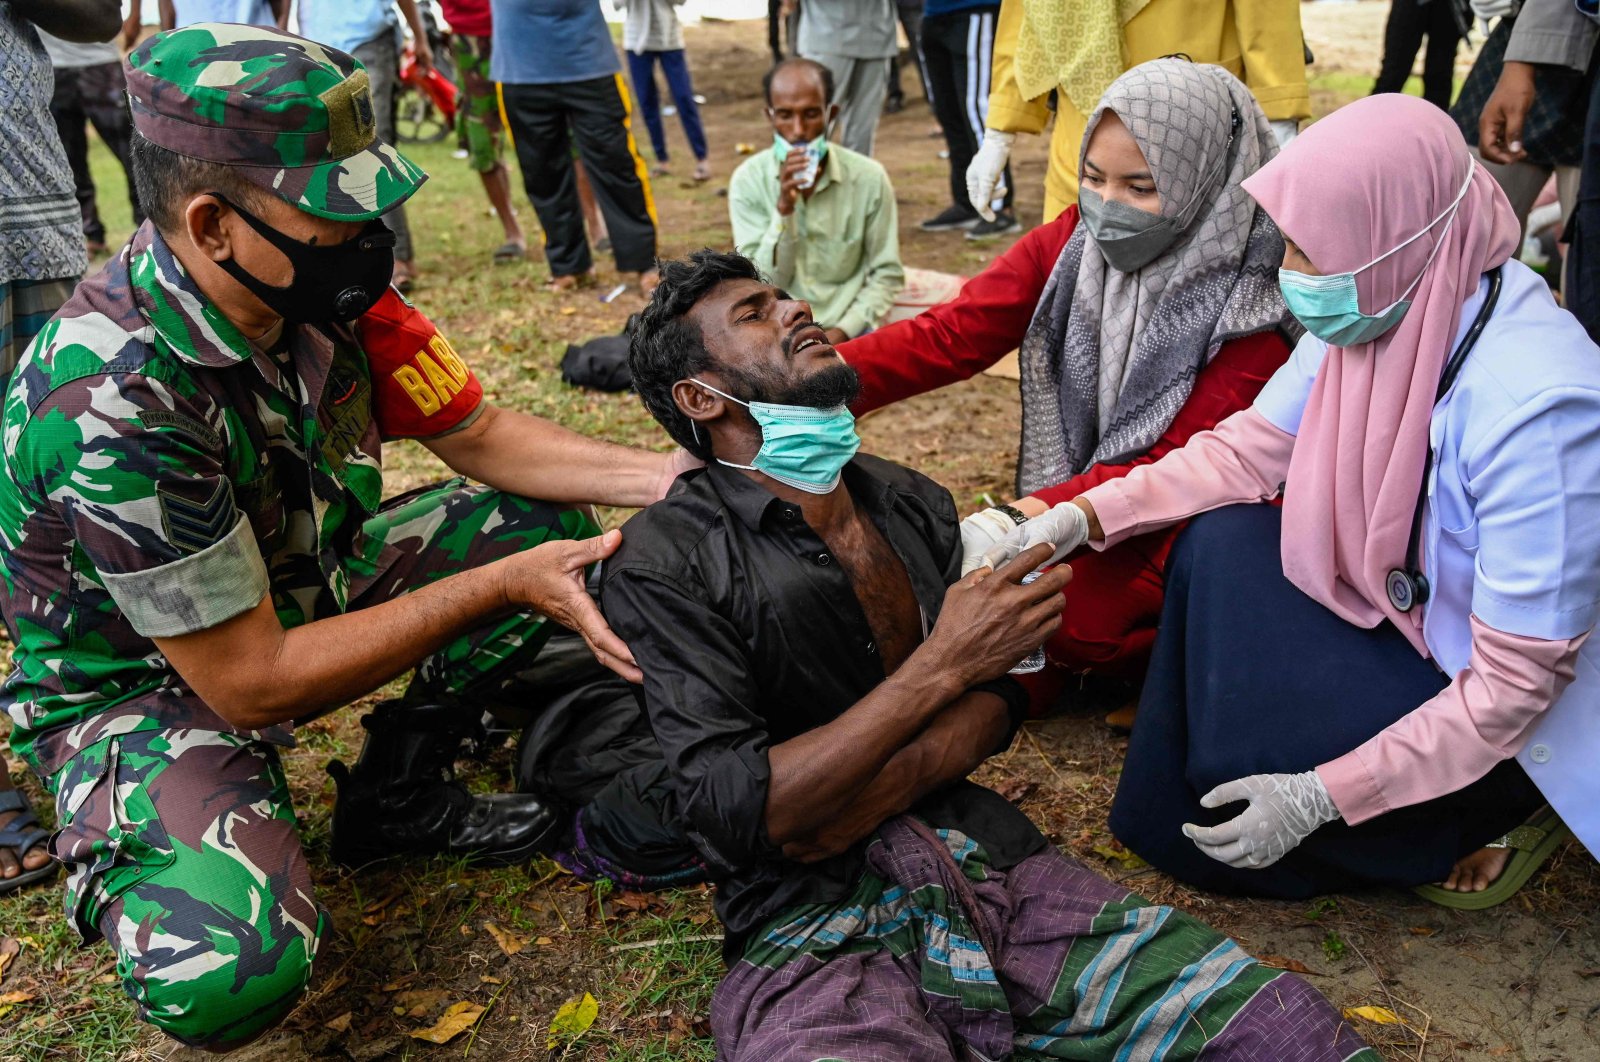 Kapal pengungsi Rohingya mendarat di Indonesia setelah berbulan-bulan di laut